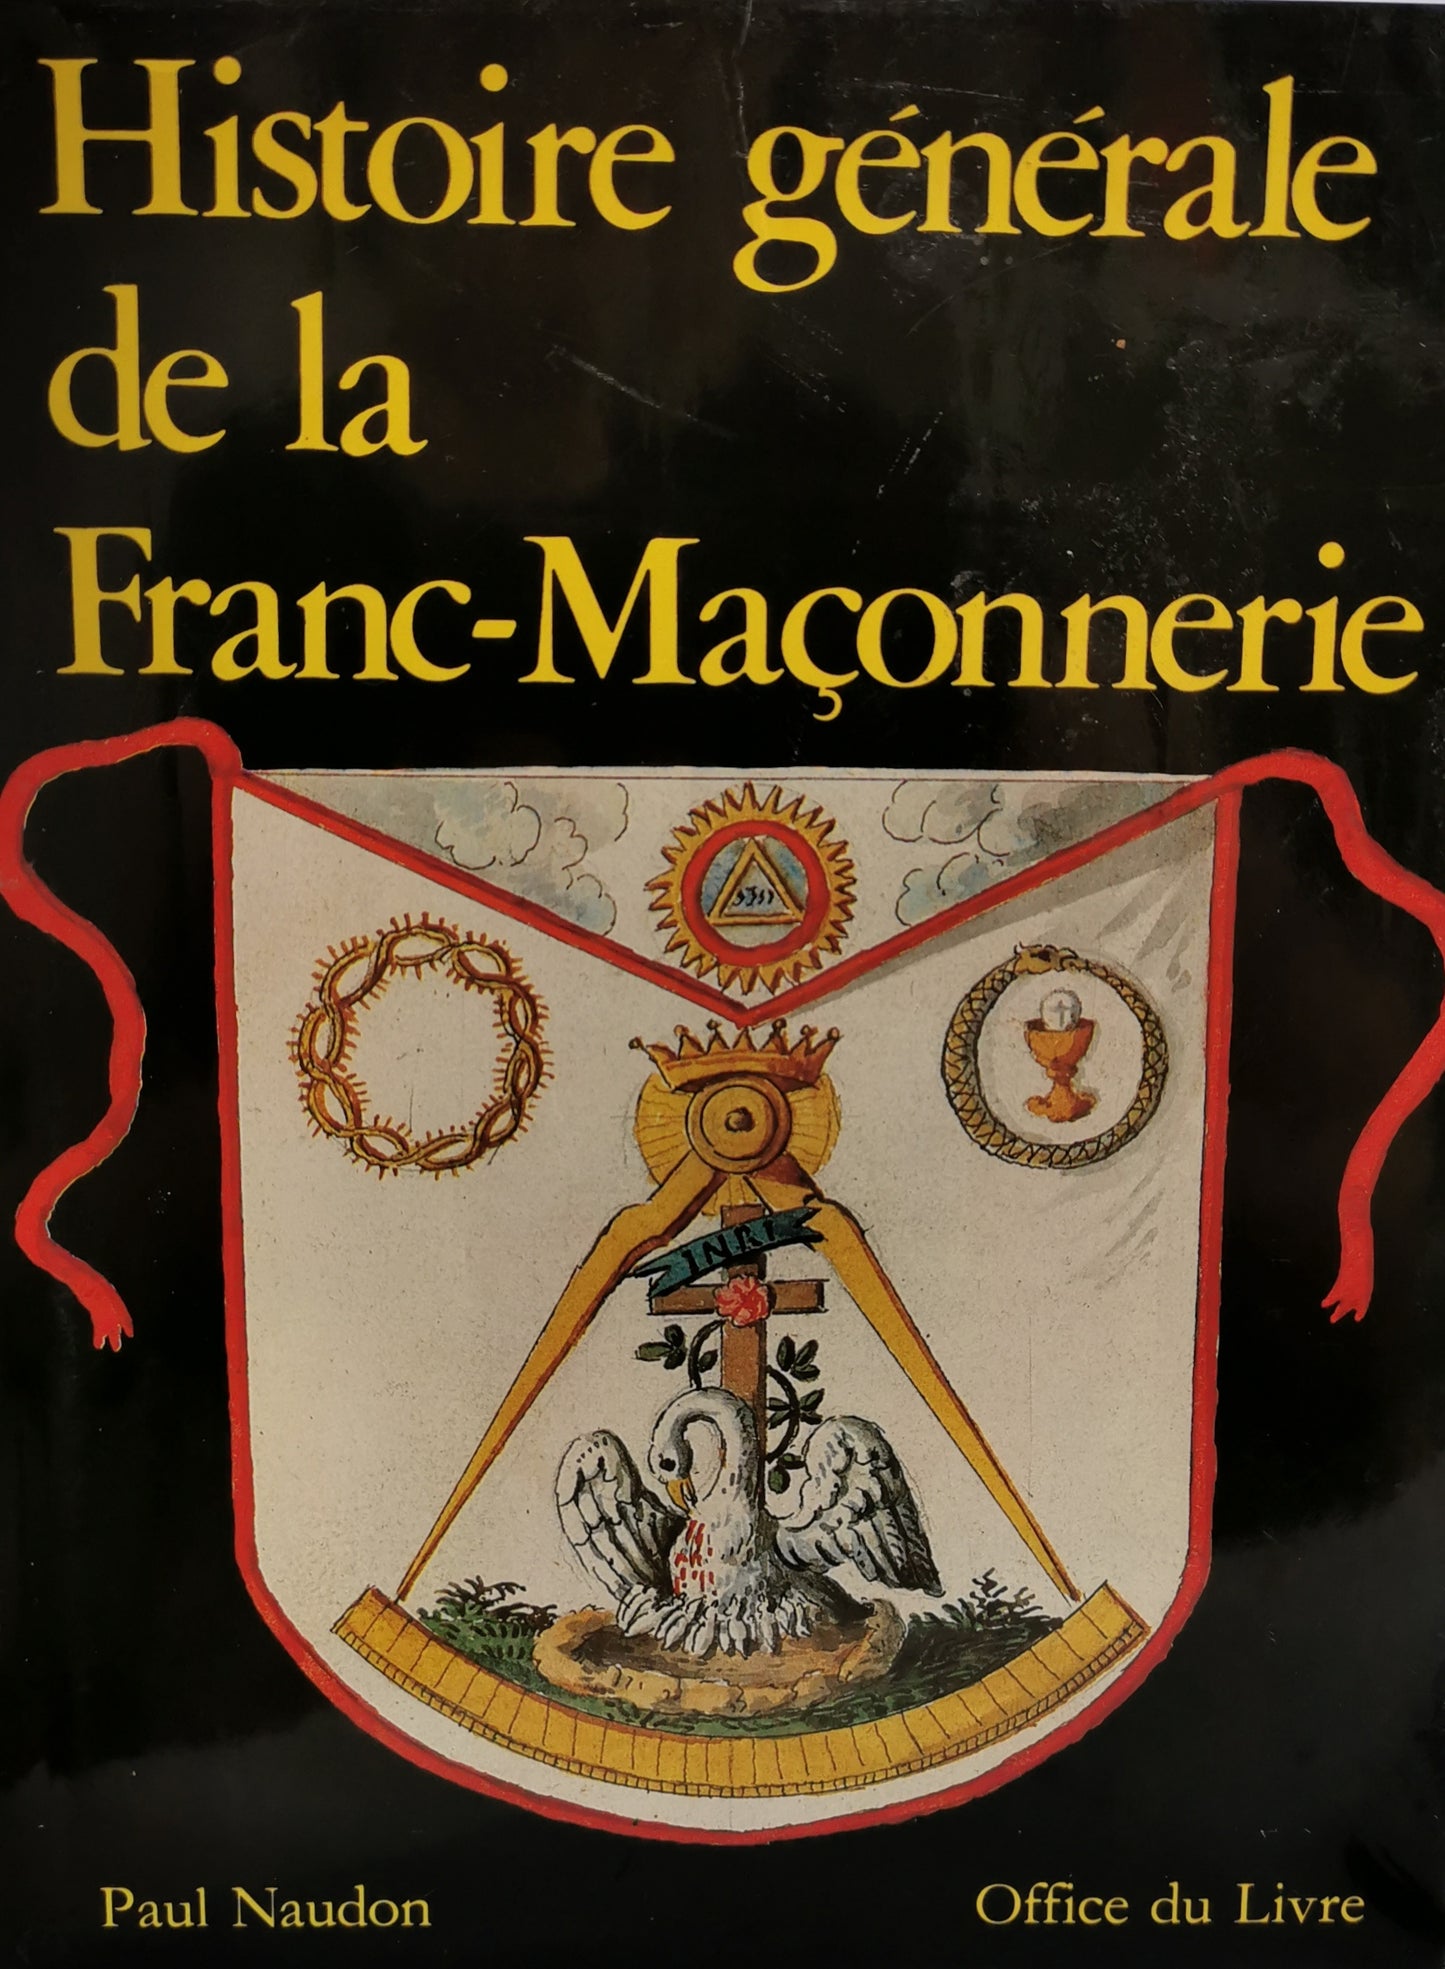 Histoire générale de la Franc-maçonnerie, Paul Naudon, Office du Livre, 1981.